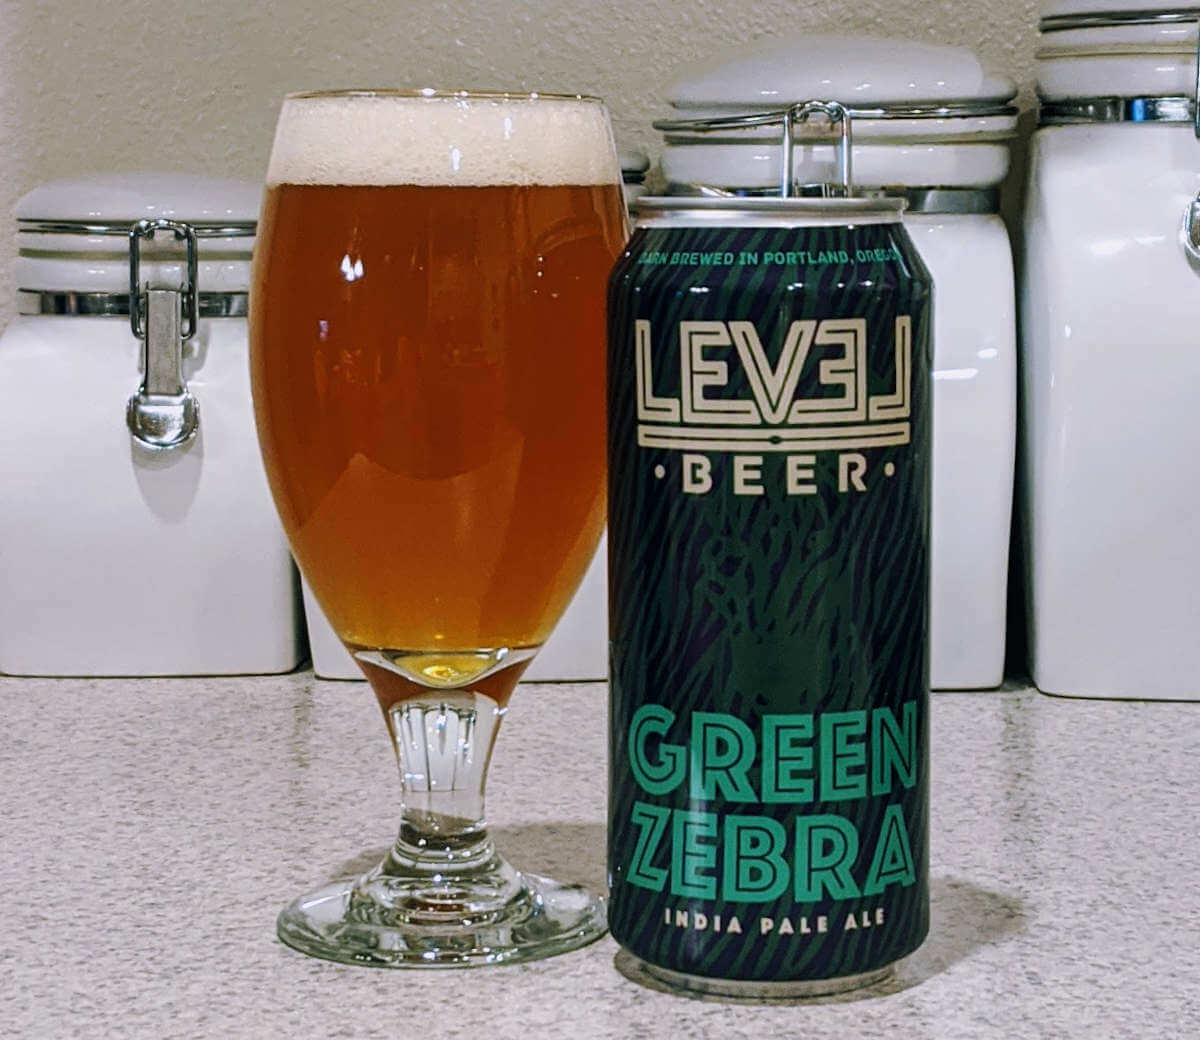 Tasting the Green Zebra (IPA)